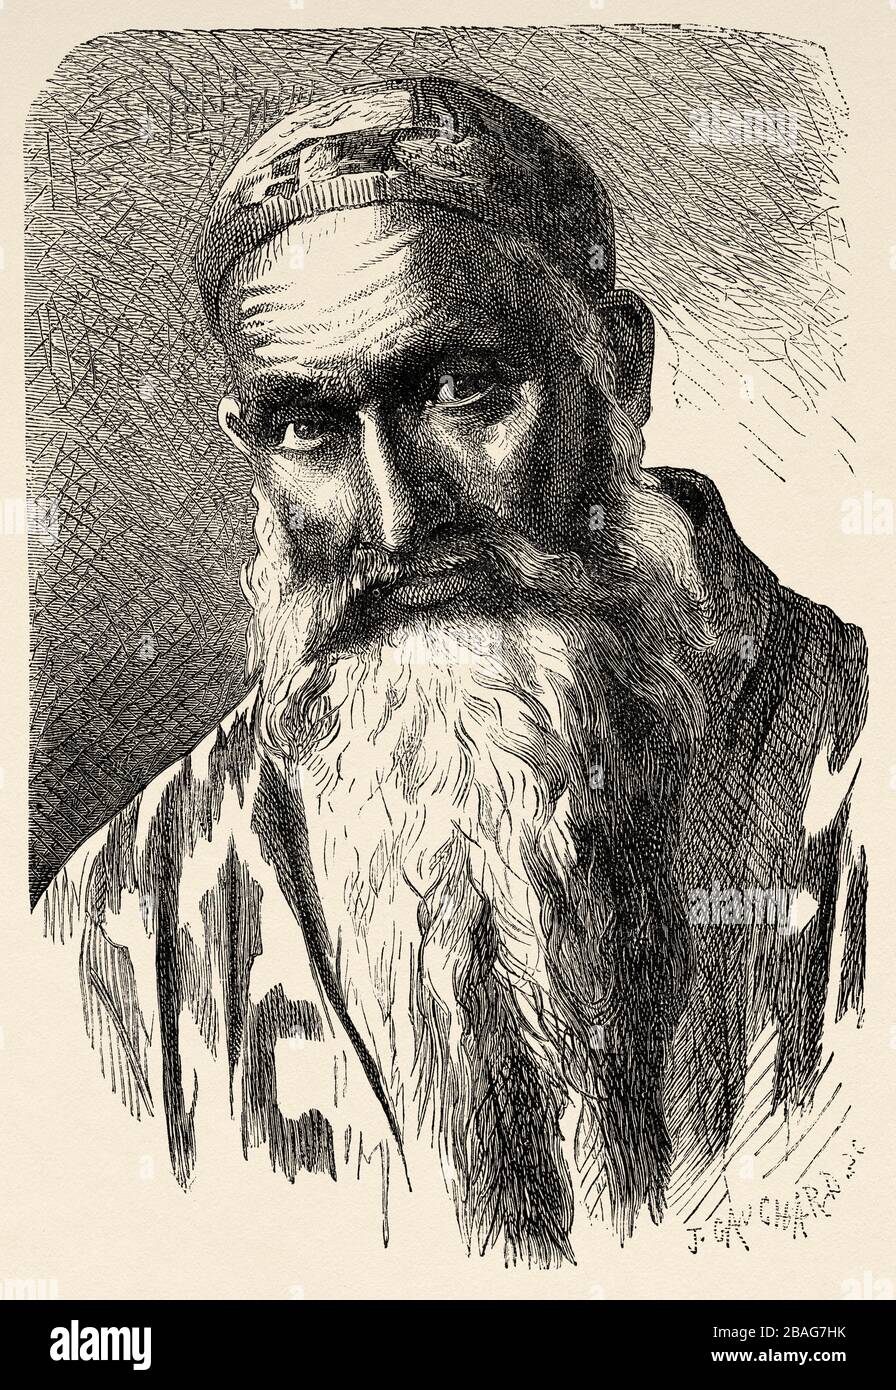 Ritratto di un uomo arabo con una barba lunga, da Viaggi in Asia centrale 1863 di Armin Vambery. Vecchia incisione El Mundo en la mano 1878 Foto Stock